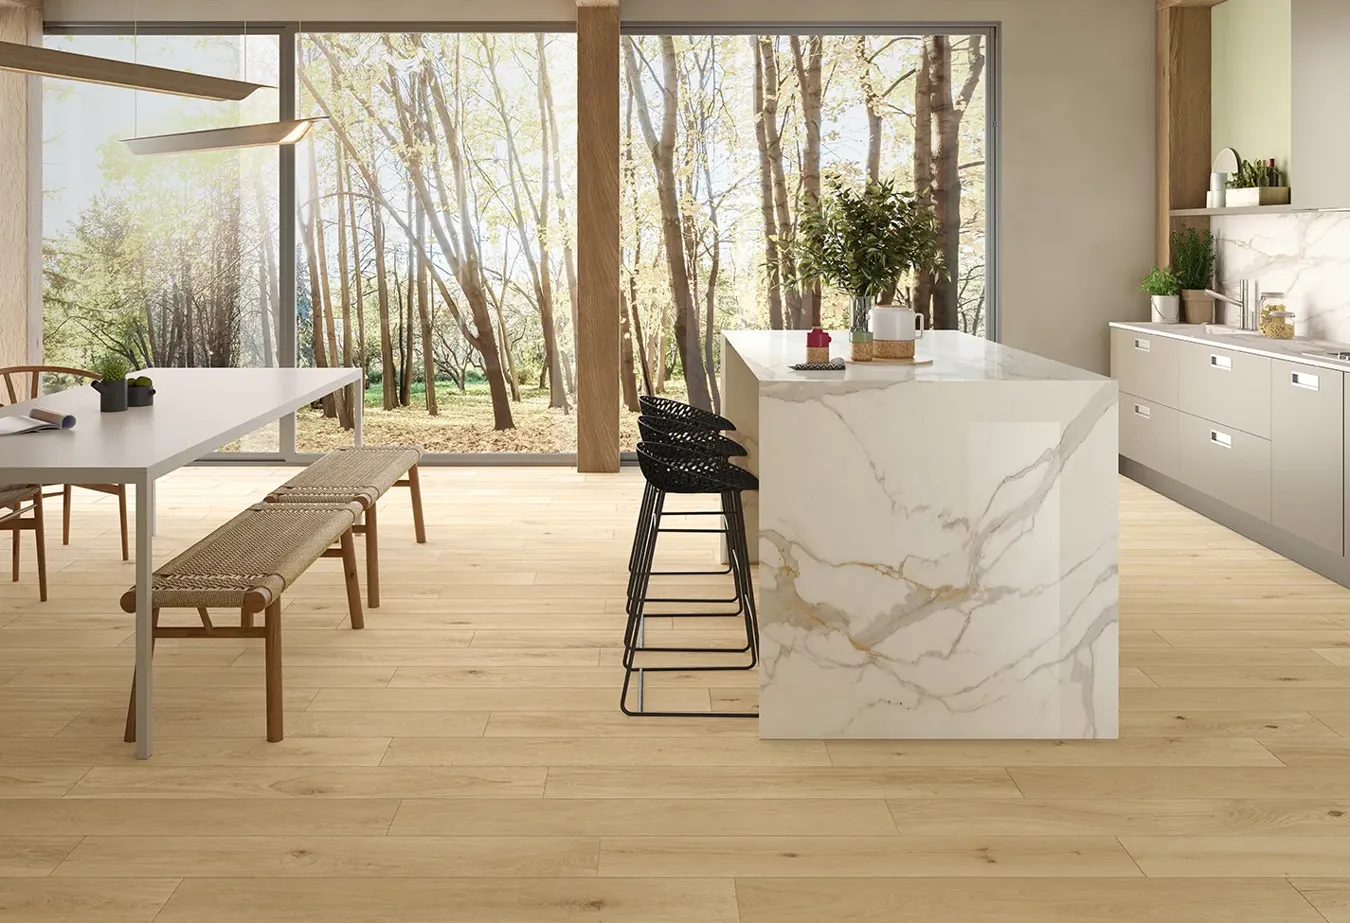 Helles Küchendesign mit Holzoptik-Bodenbelag, zentraler Insel und Arbeitsplatte in weißer Marmoreffekt.